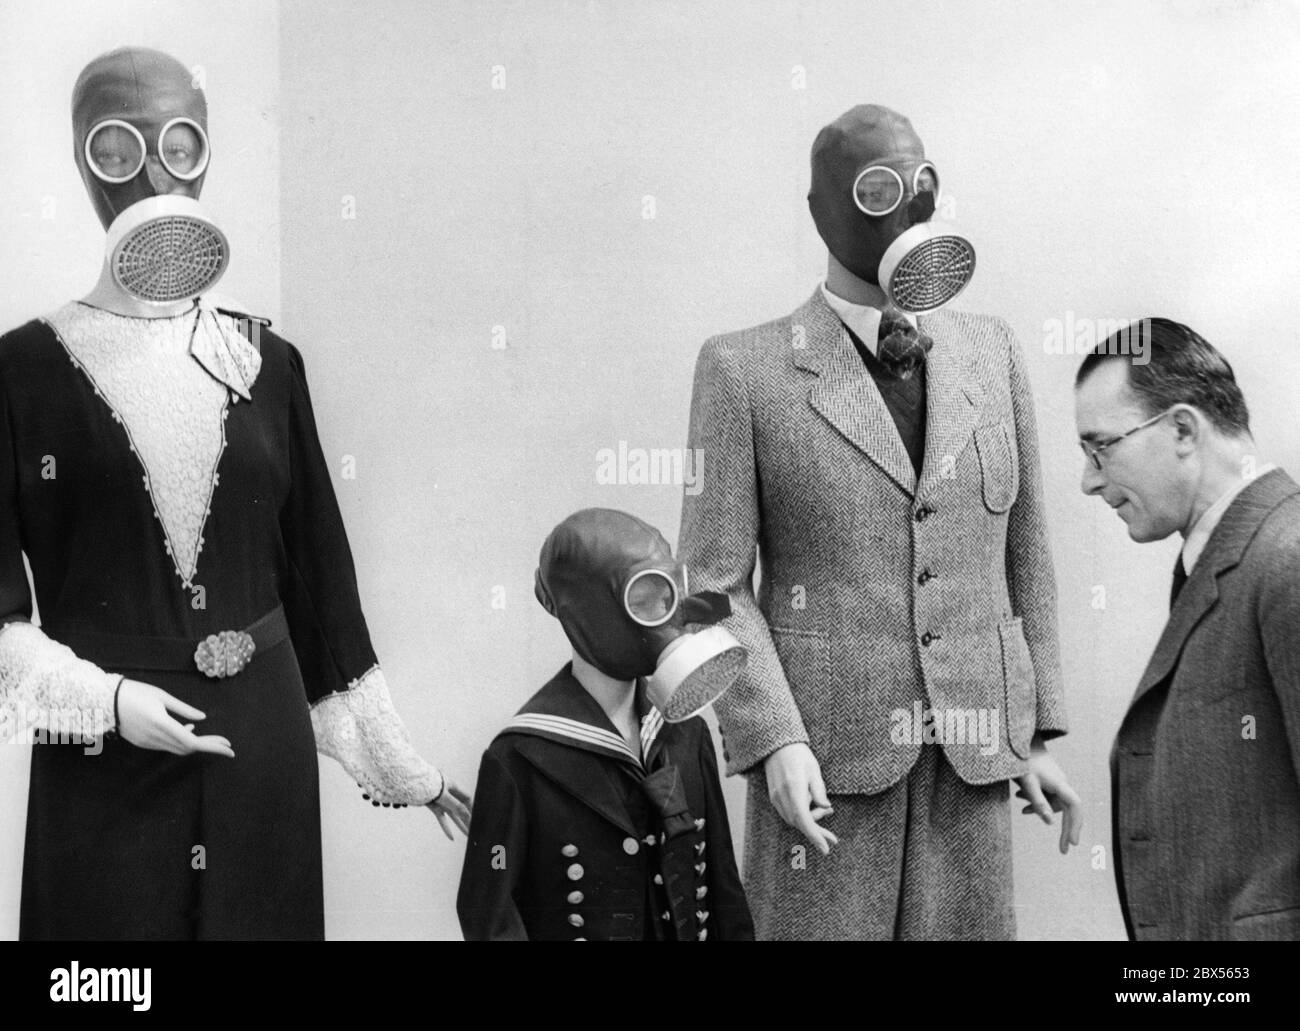 Alla mostra "Gesundes Leben - Frohes Schaffen" (vita sana - lavoro felice) di Berlino nel 1938, una famiglia tedesca media è esposta indossando maschere respiratorie. Foto Stock